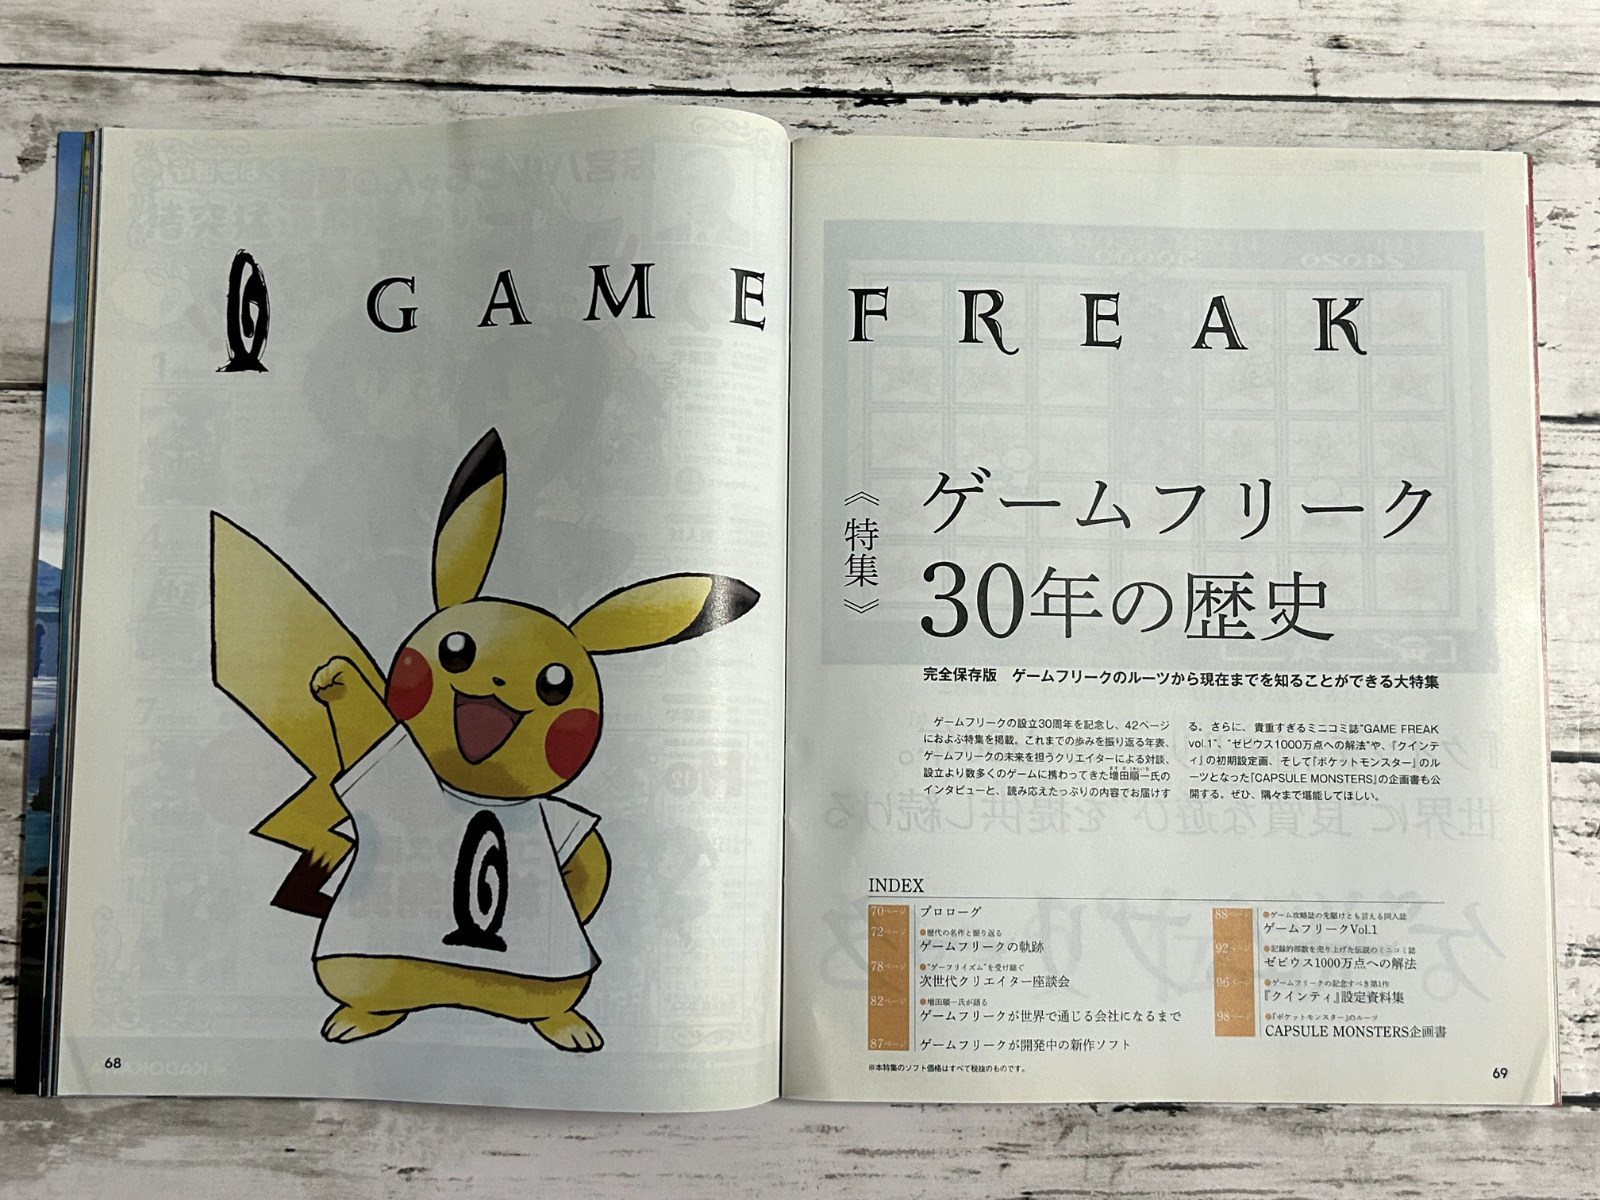 Game Magazine 2018 Game Freak history Capsule Monster etc Pokemon Japanese